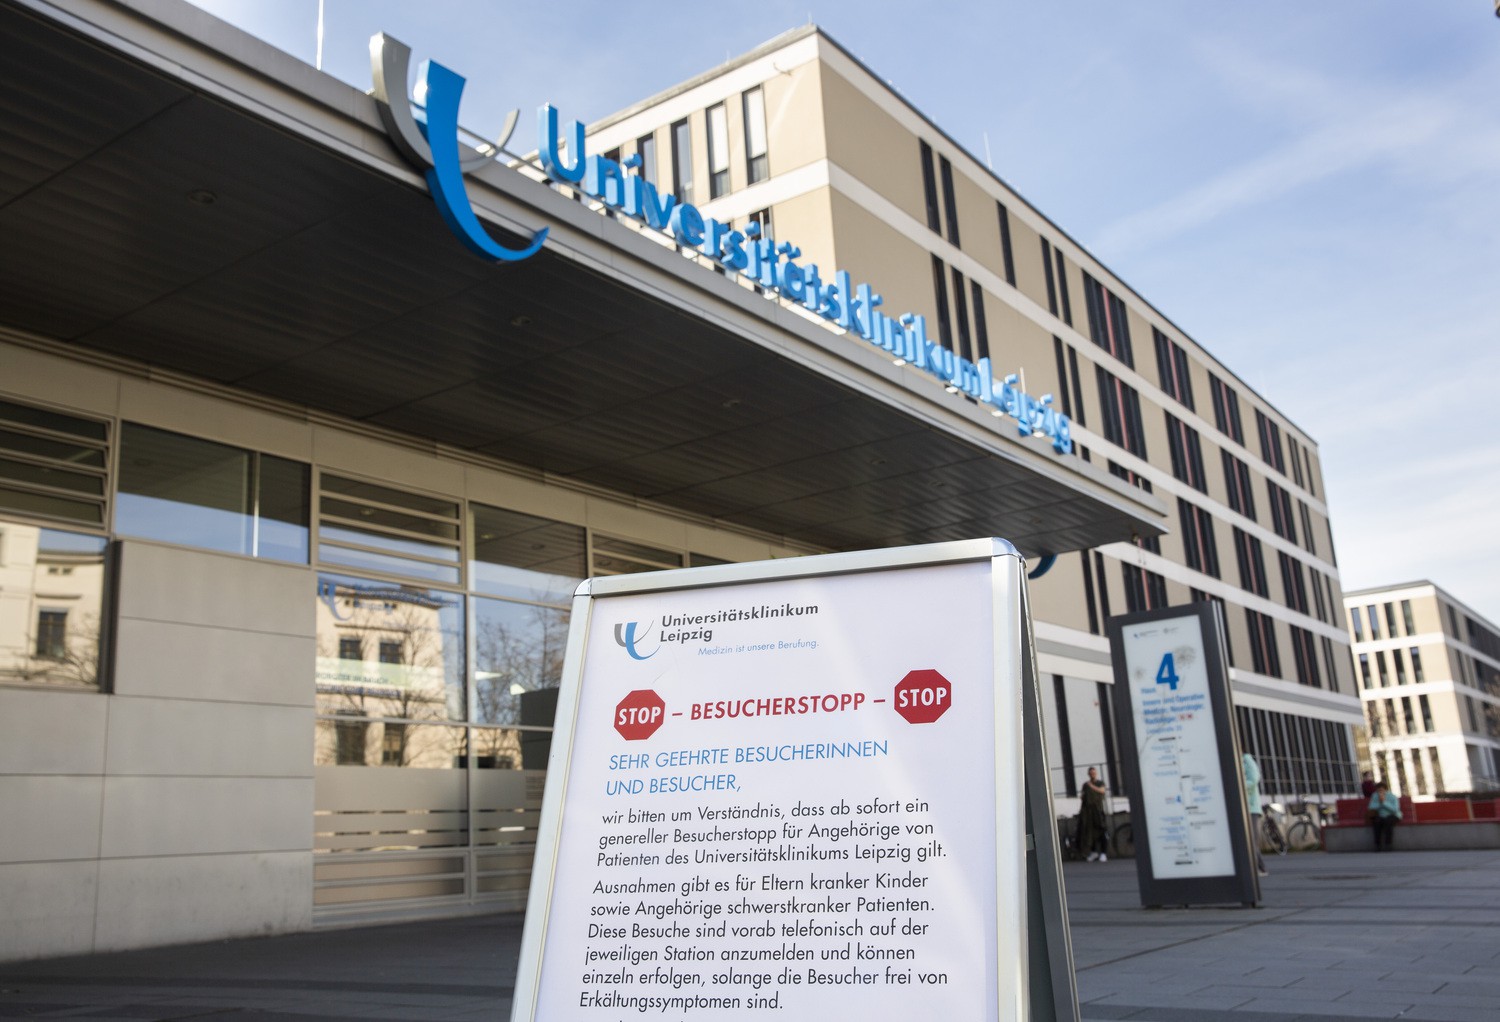 Ab Mittwoch, 4. November, gilt am Universitätsklinikum Leipzig und an allen weiteren Leipziger Kliniken wie im Frühjahr (Foto) ein Besucherstopp. Der aktuelle Anstieg der Infektionszahlen veranlasste die Kliniken zu diesem Schritt.